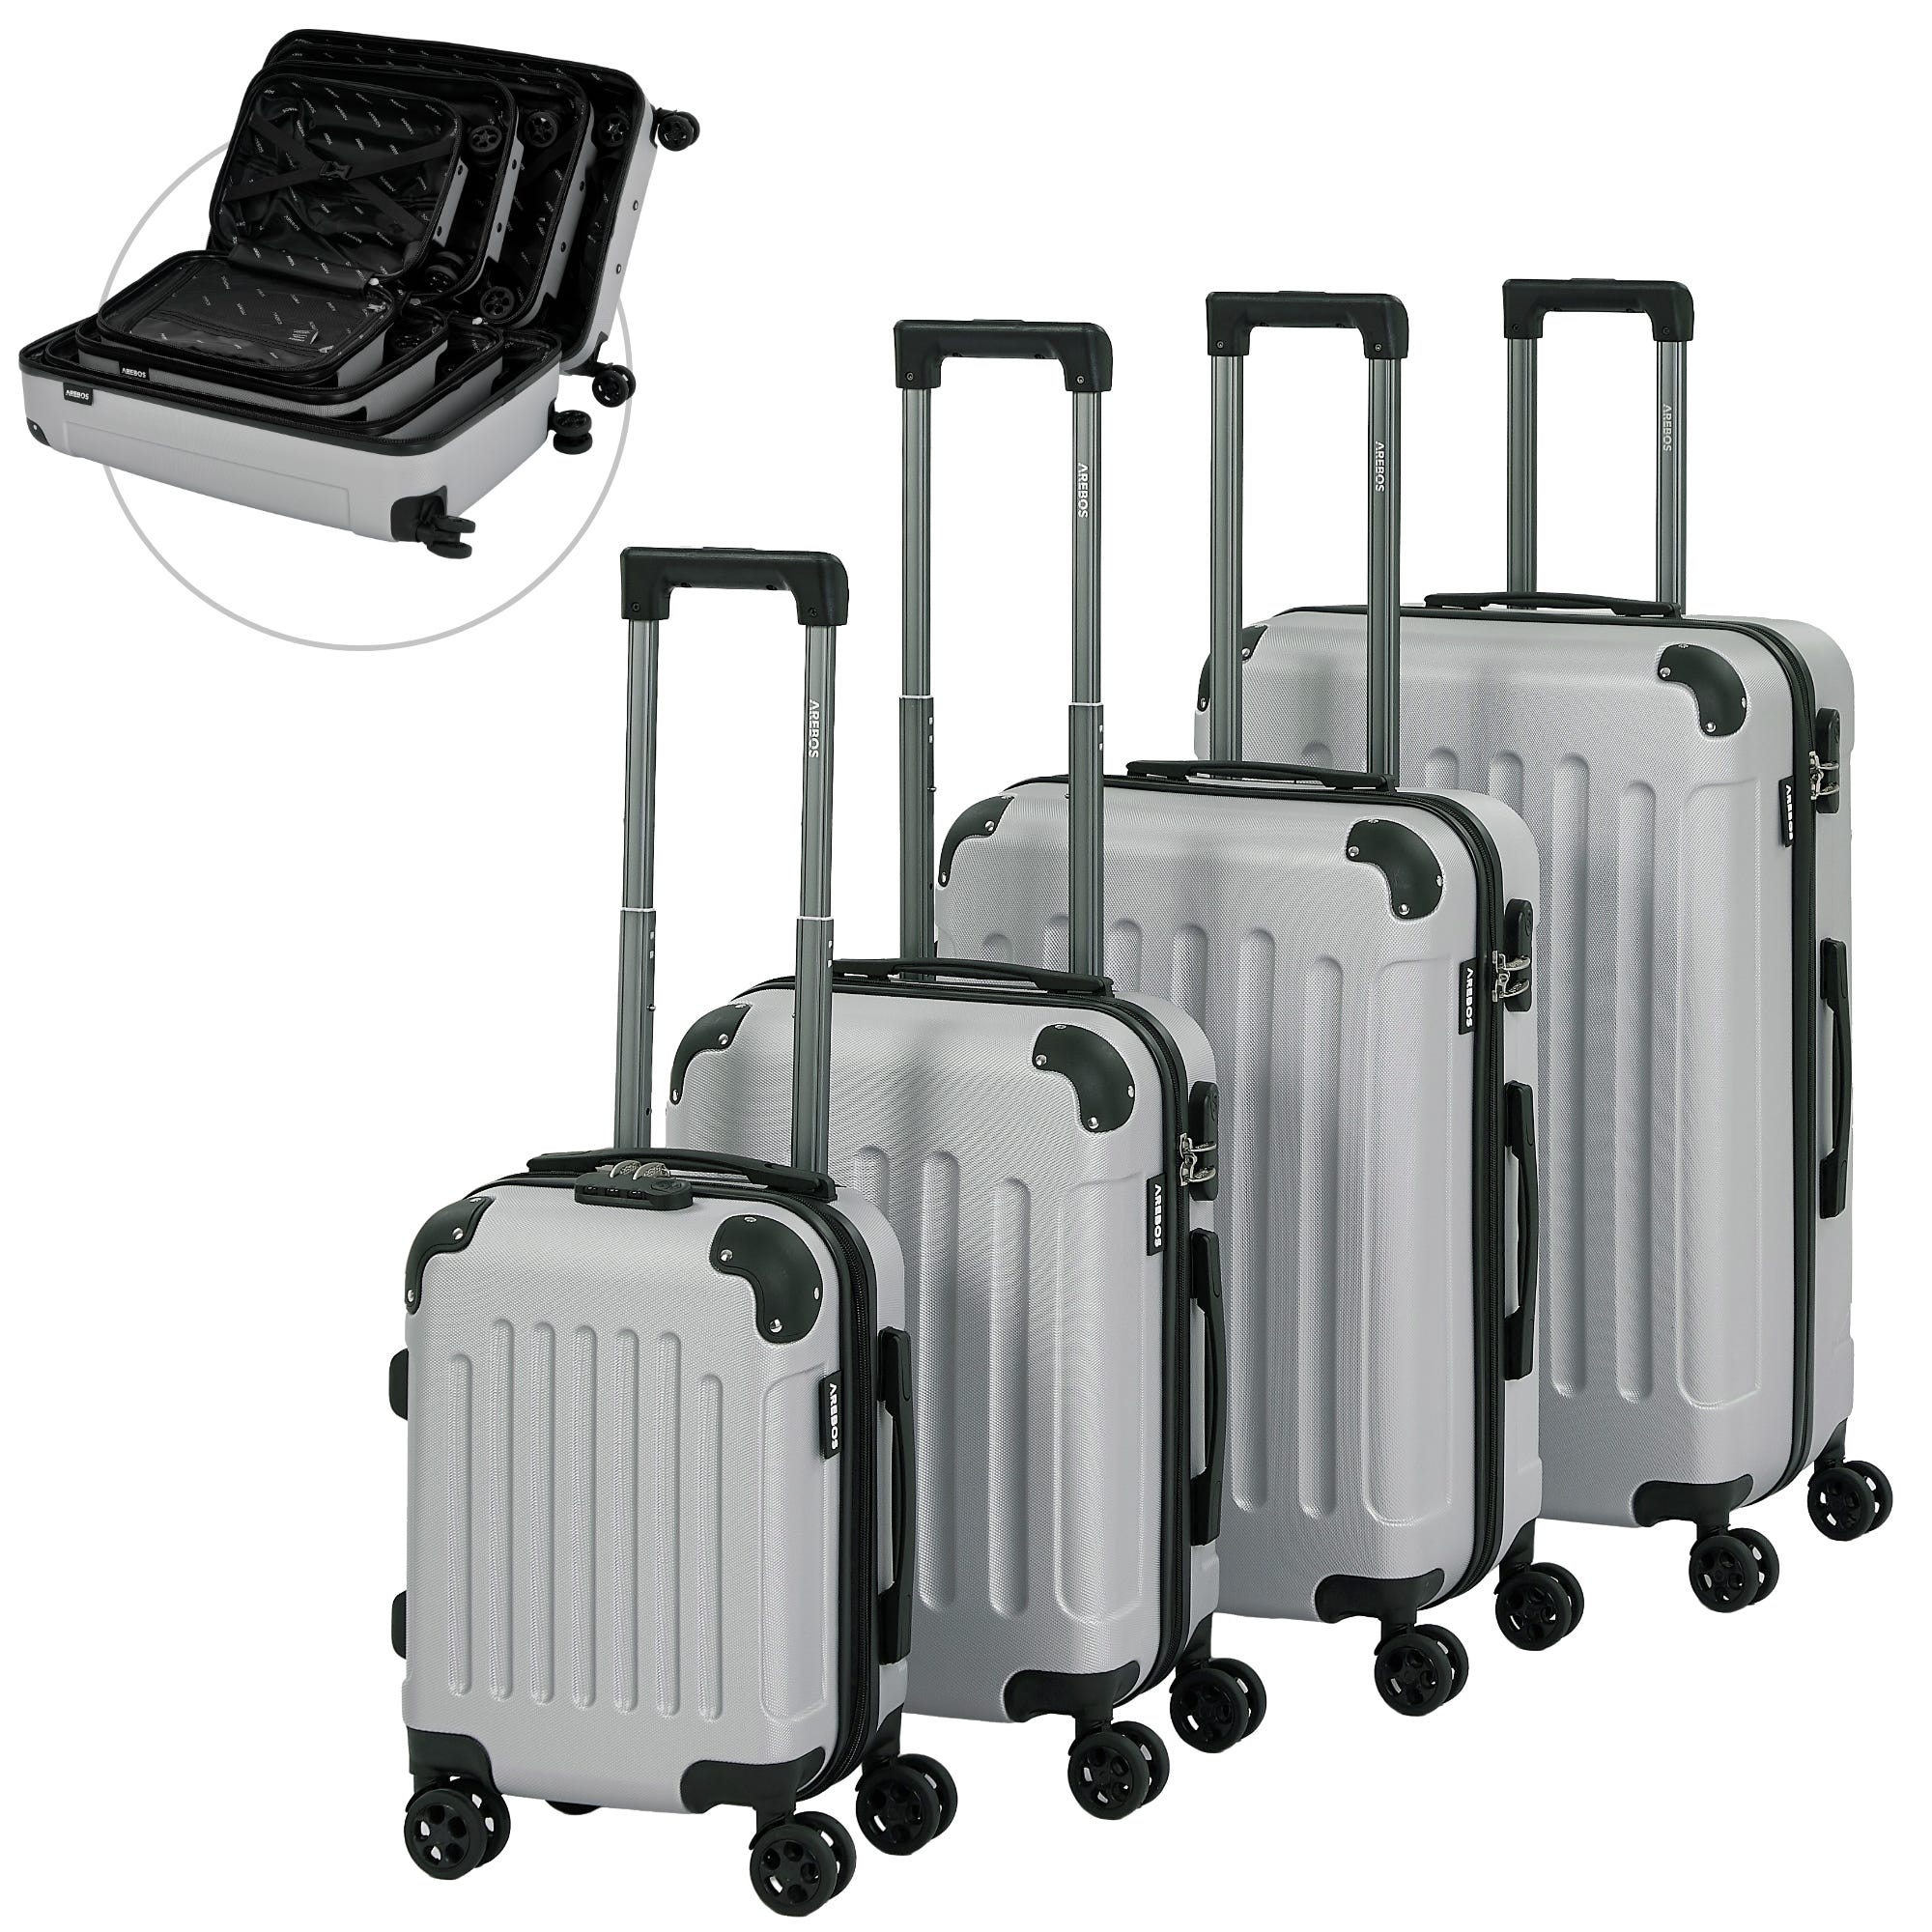 Valise de Voyage, Set de 4 valises I Coque Rigide ABS I Trolley Set de  valises I Serrure à glissière Incluse, roulettes 360° I S-M-L-XL Argent